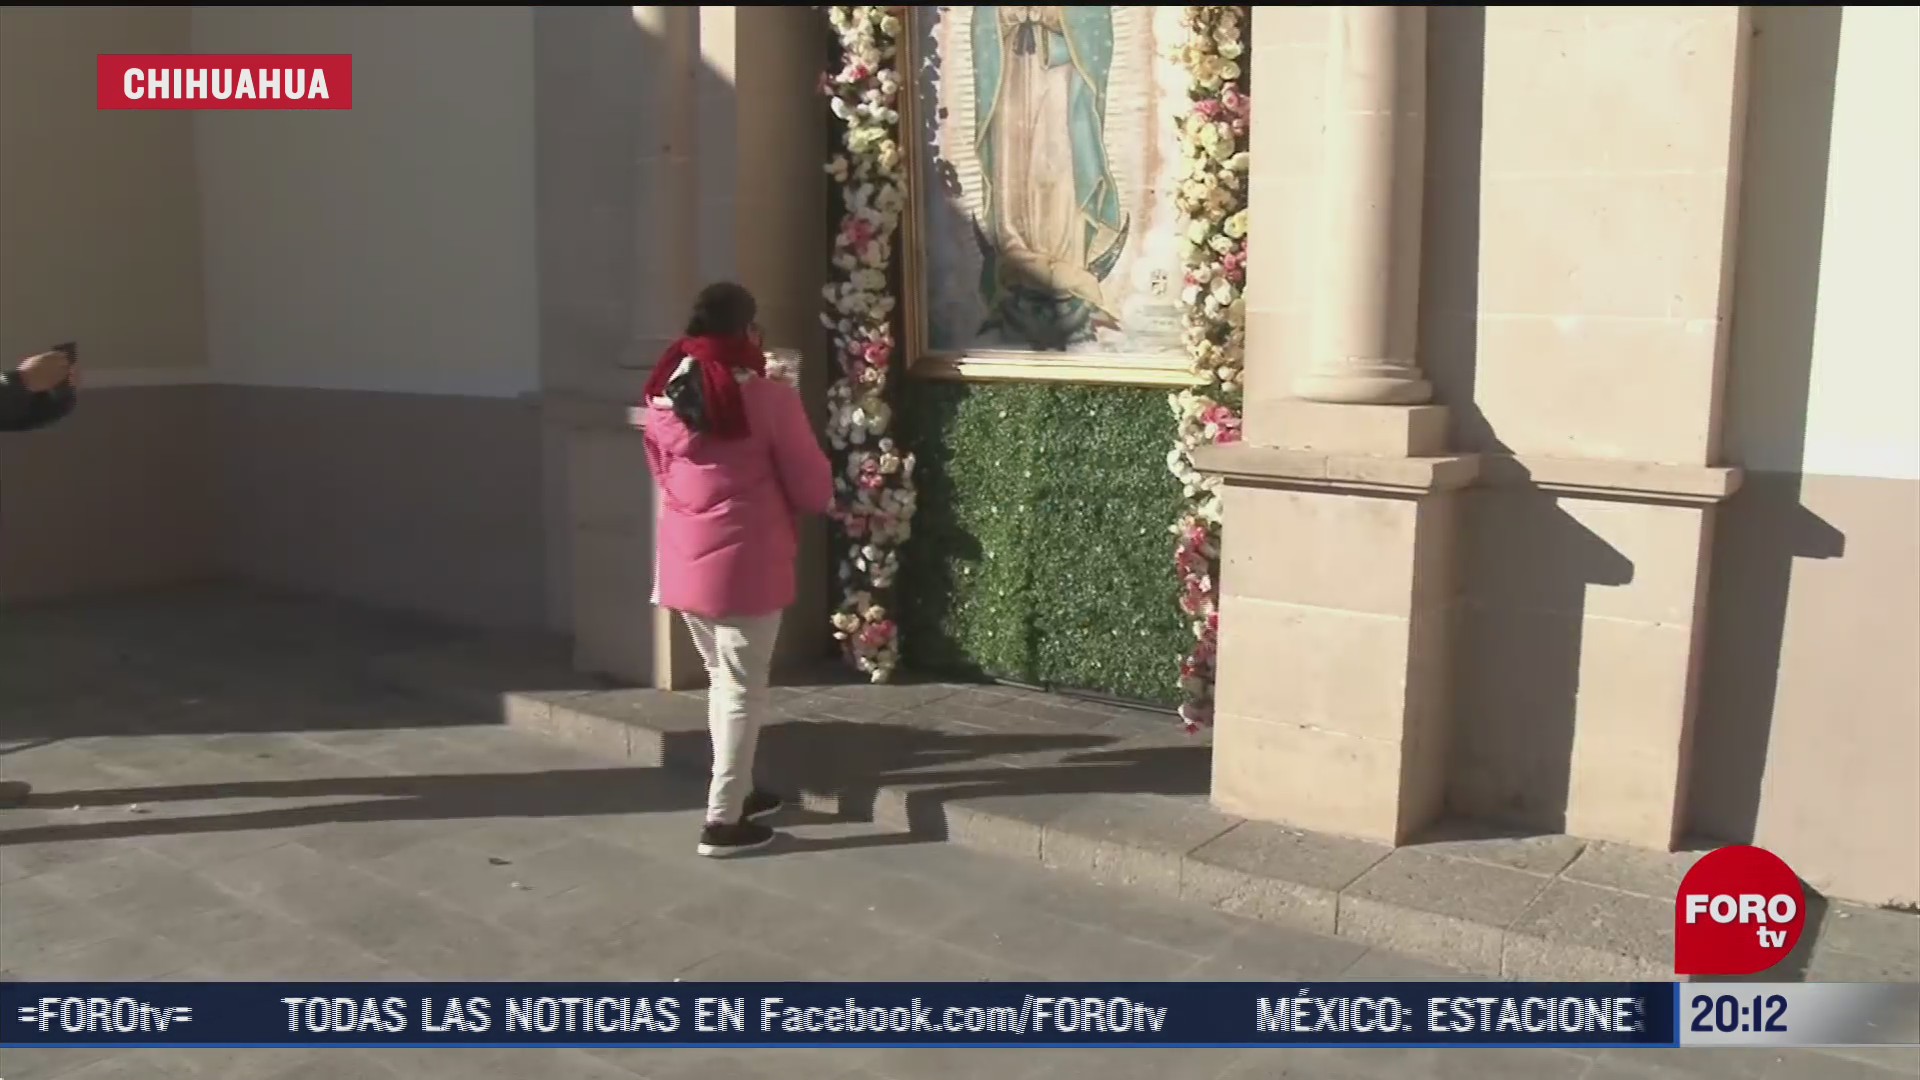 fieles festejan en solitario a la virgen en ciudad juarez